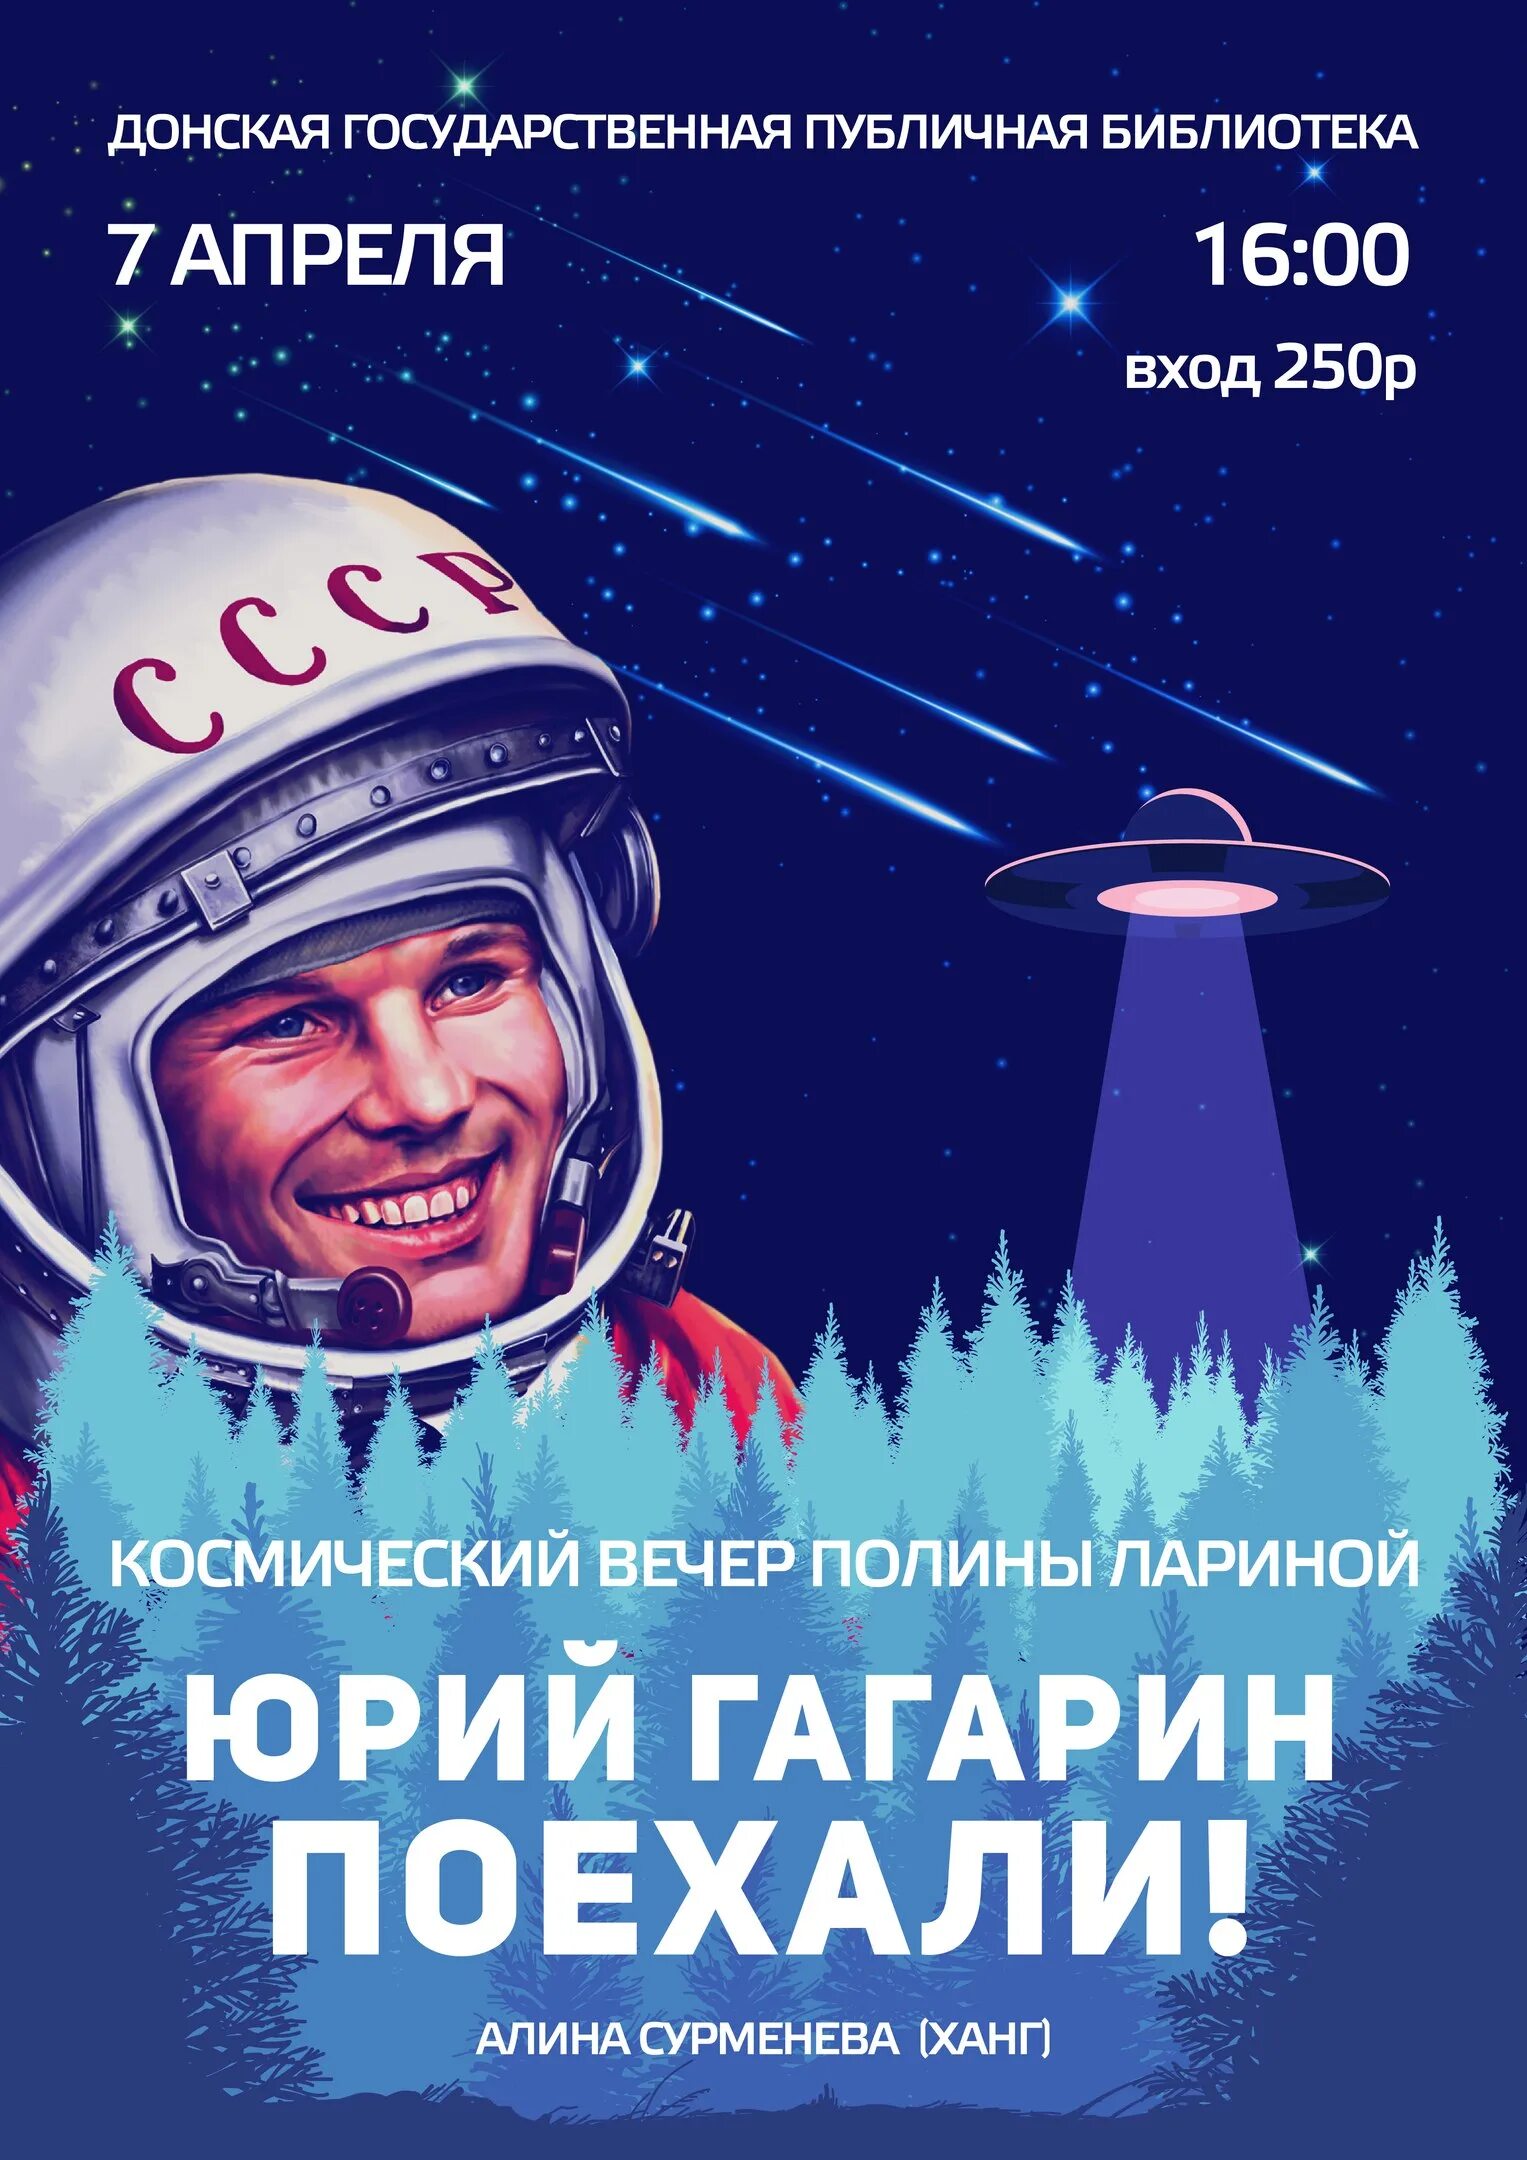 Плакат Гагарин поехали.